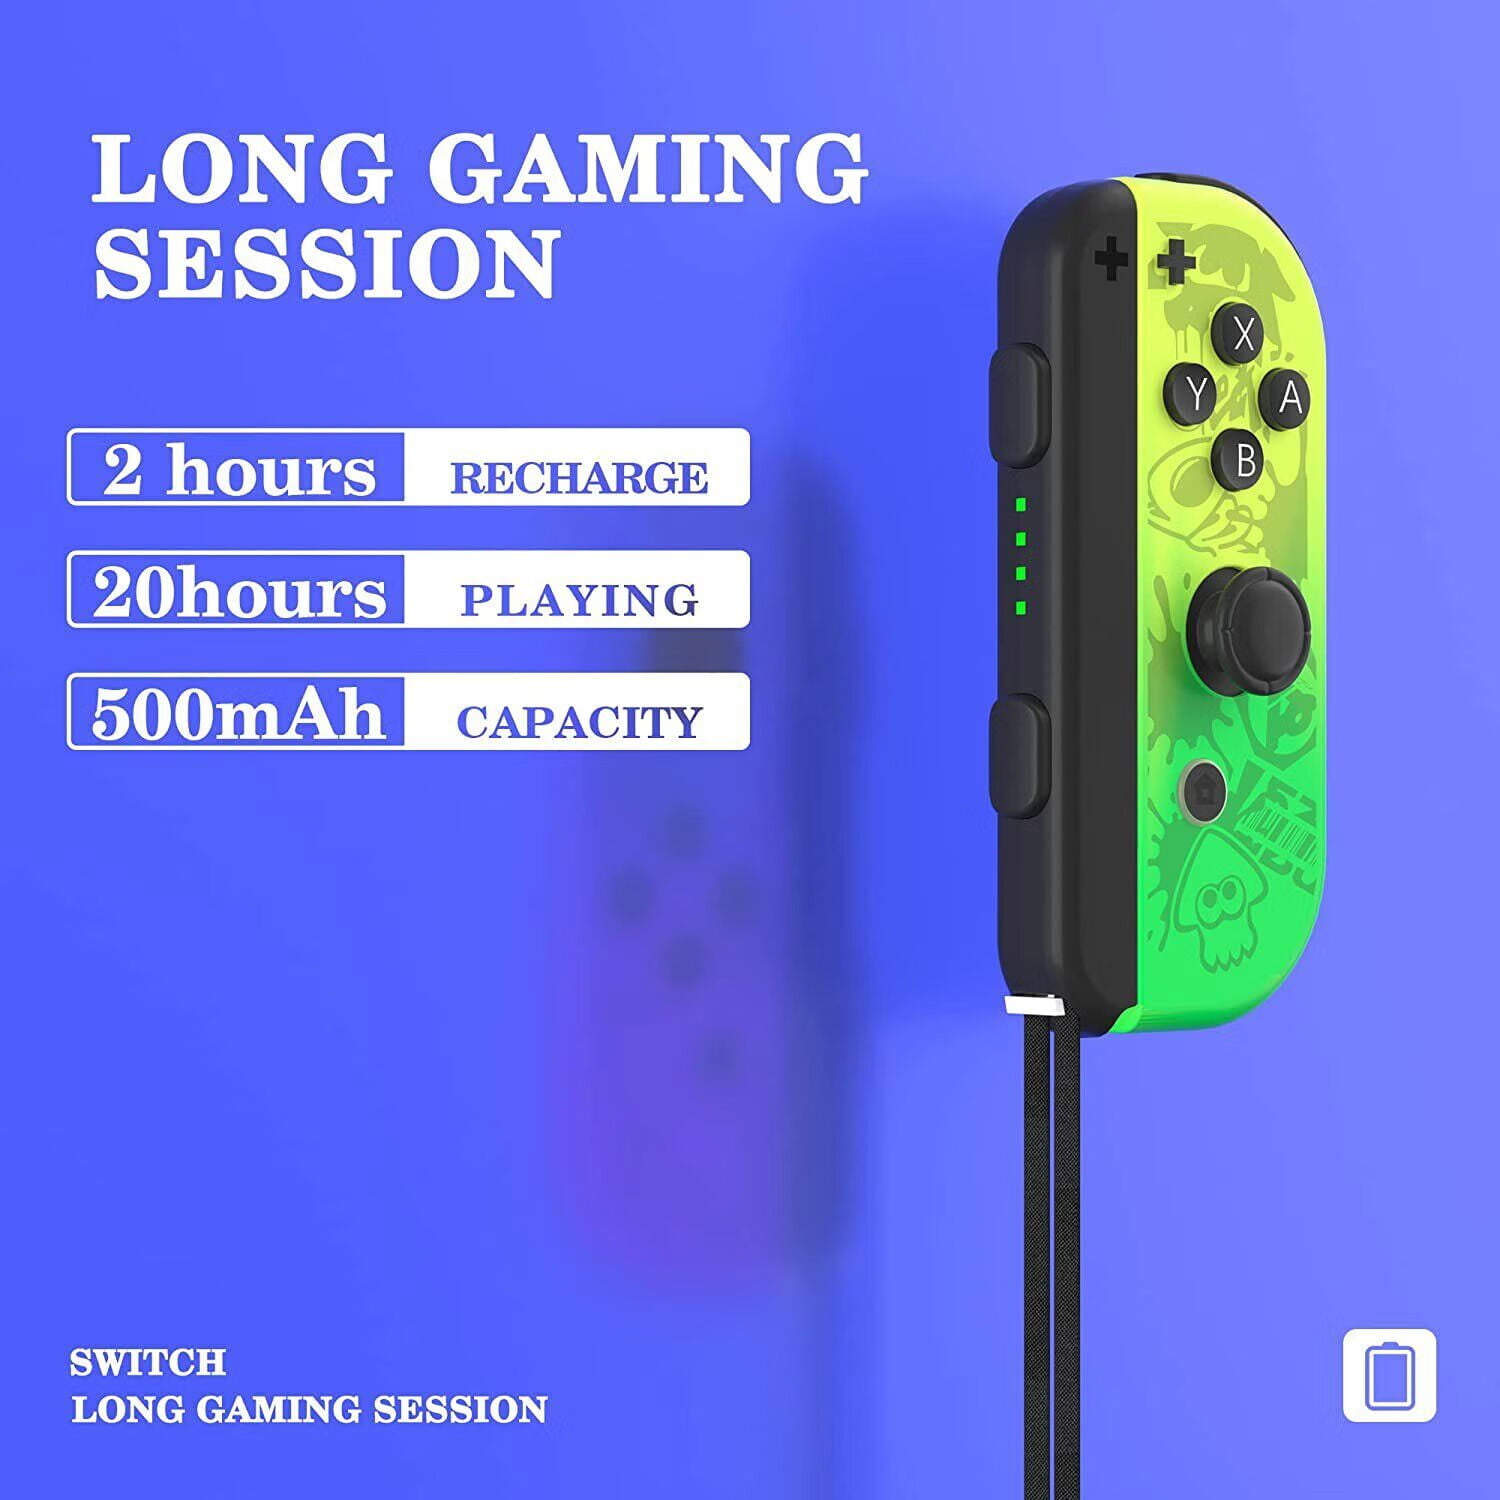 Nintendo Switch : 3 méthodes pour recharger vos Joy-Con